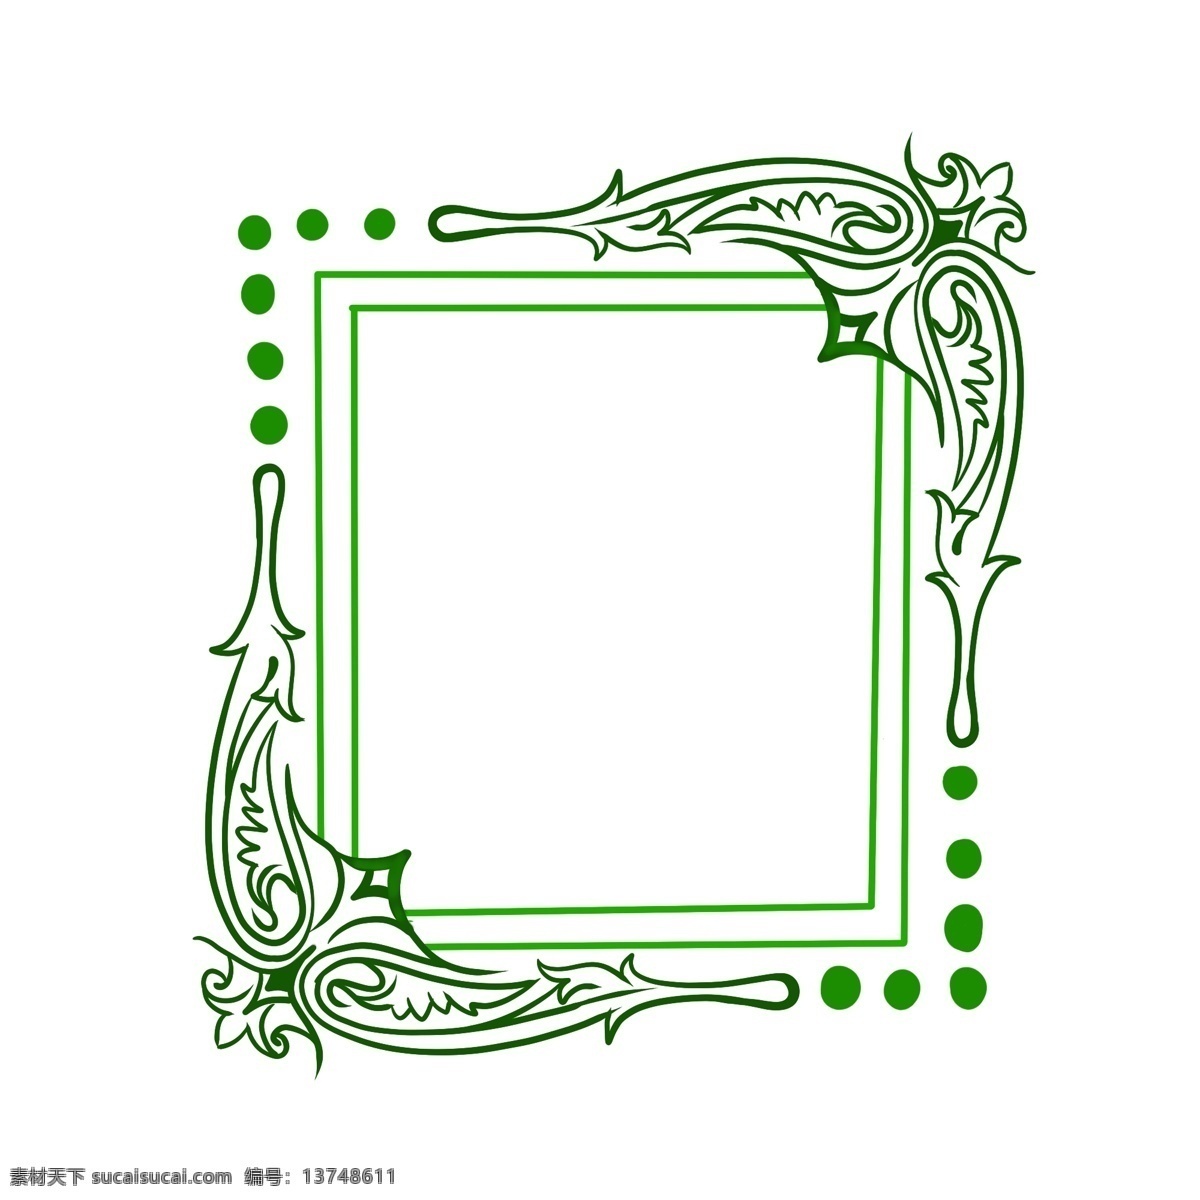 欧式 方形 边框 插画 绿色的边框 正方形边框 欧式花边 绿色圆点装饰 边框纹理 欧式边框插图